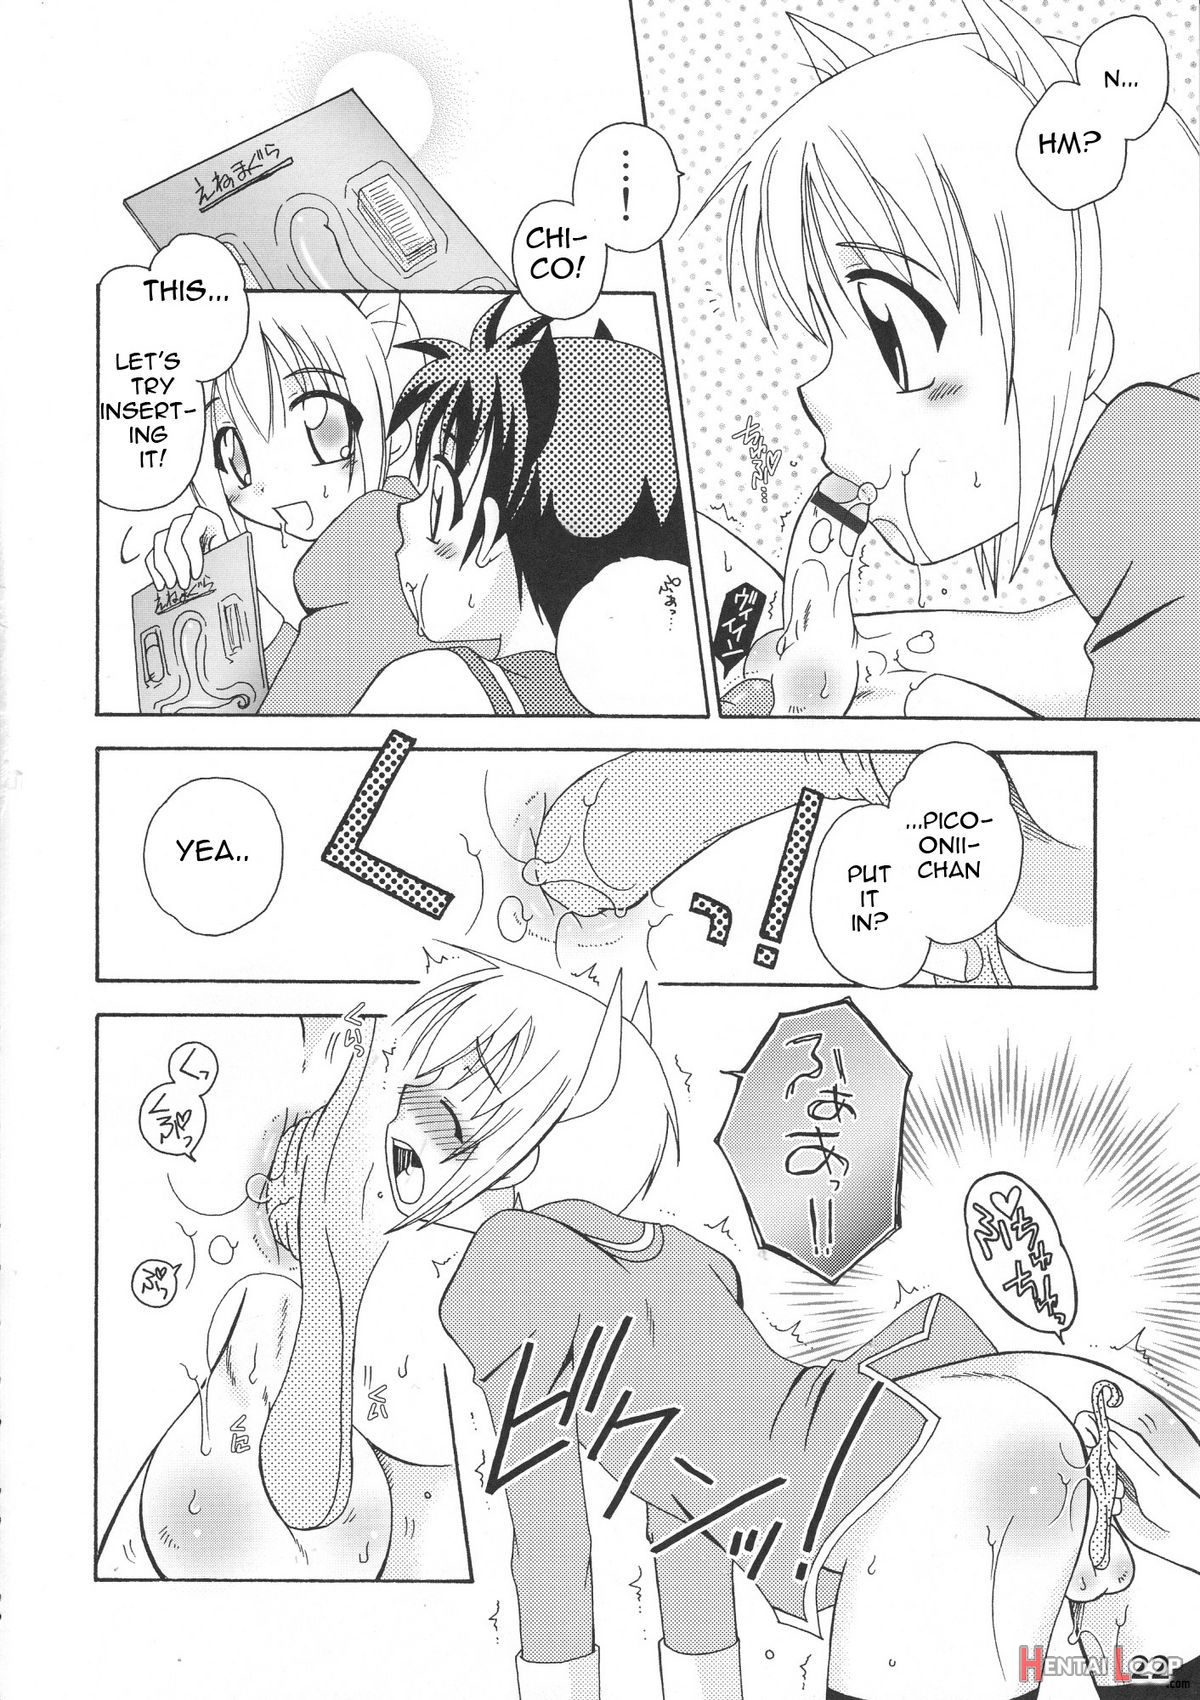 Bokutachi! Shotappuru!! page 22